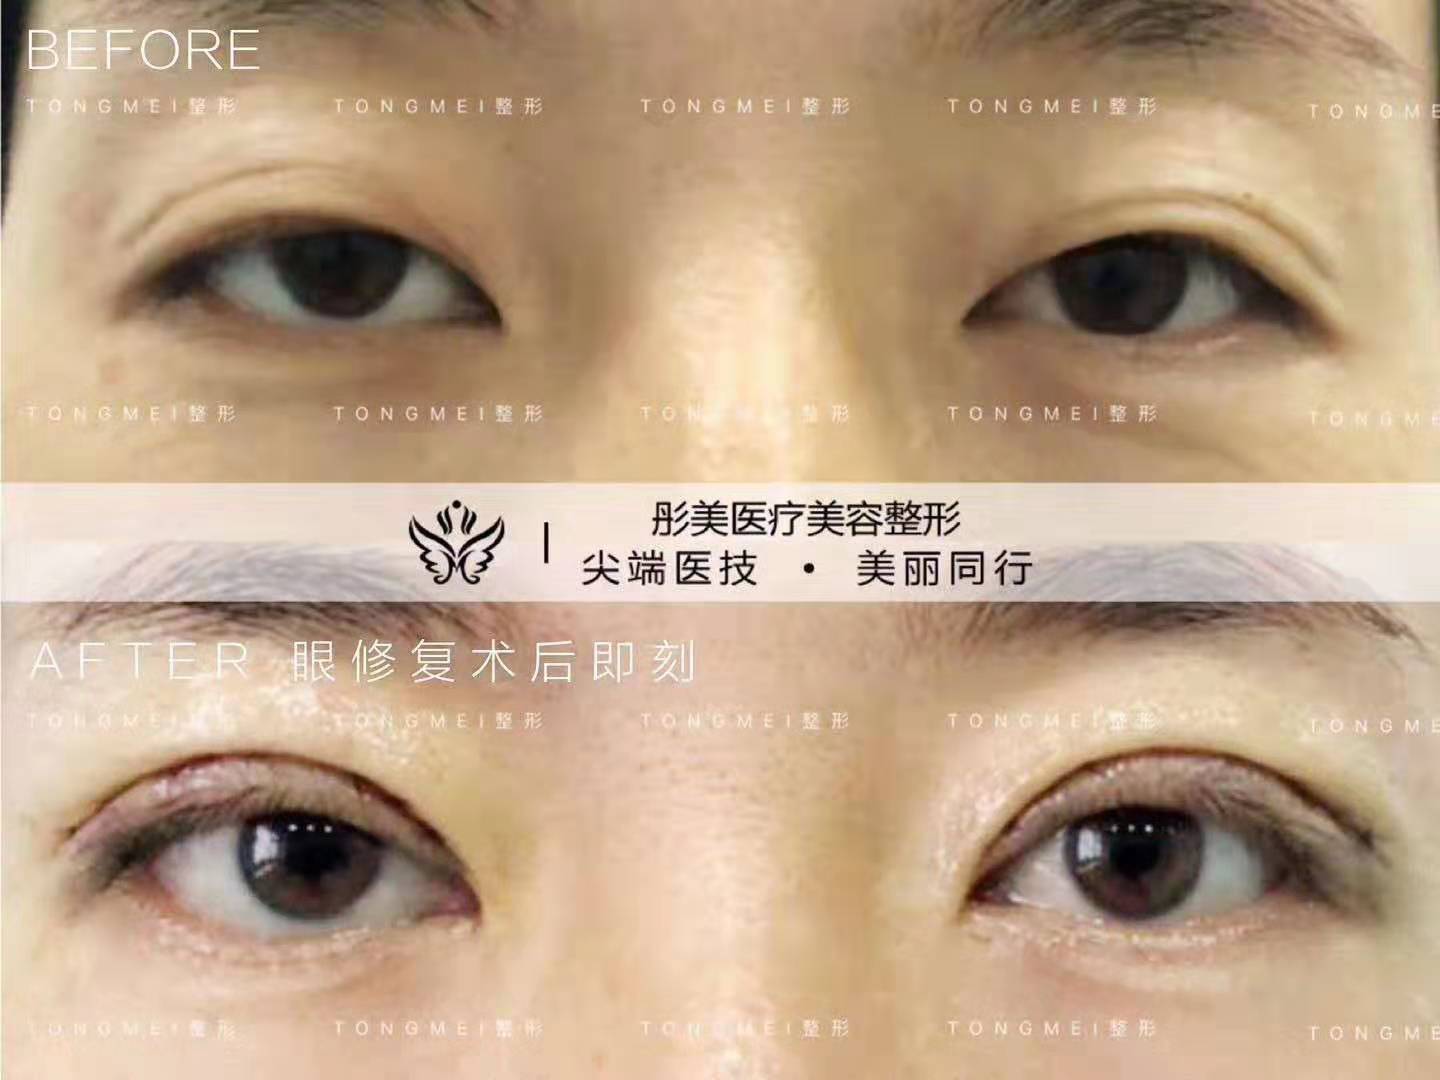 刘风卓双眼皮修复案例